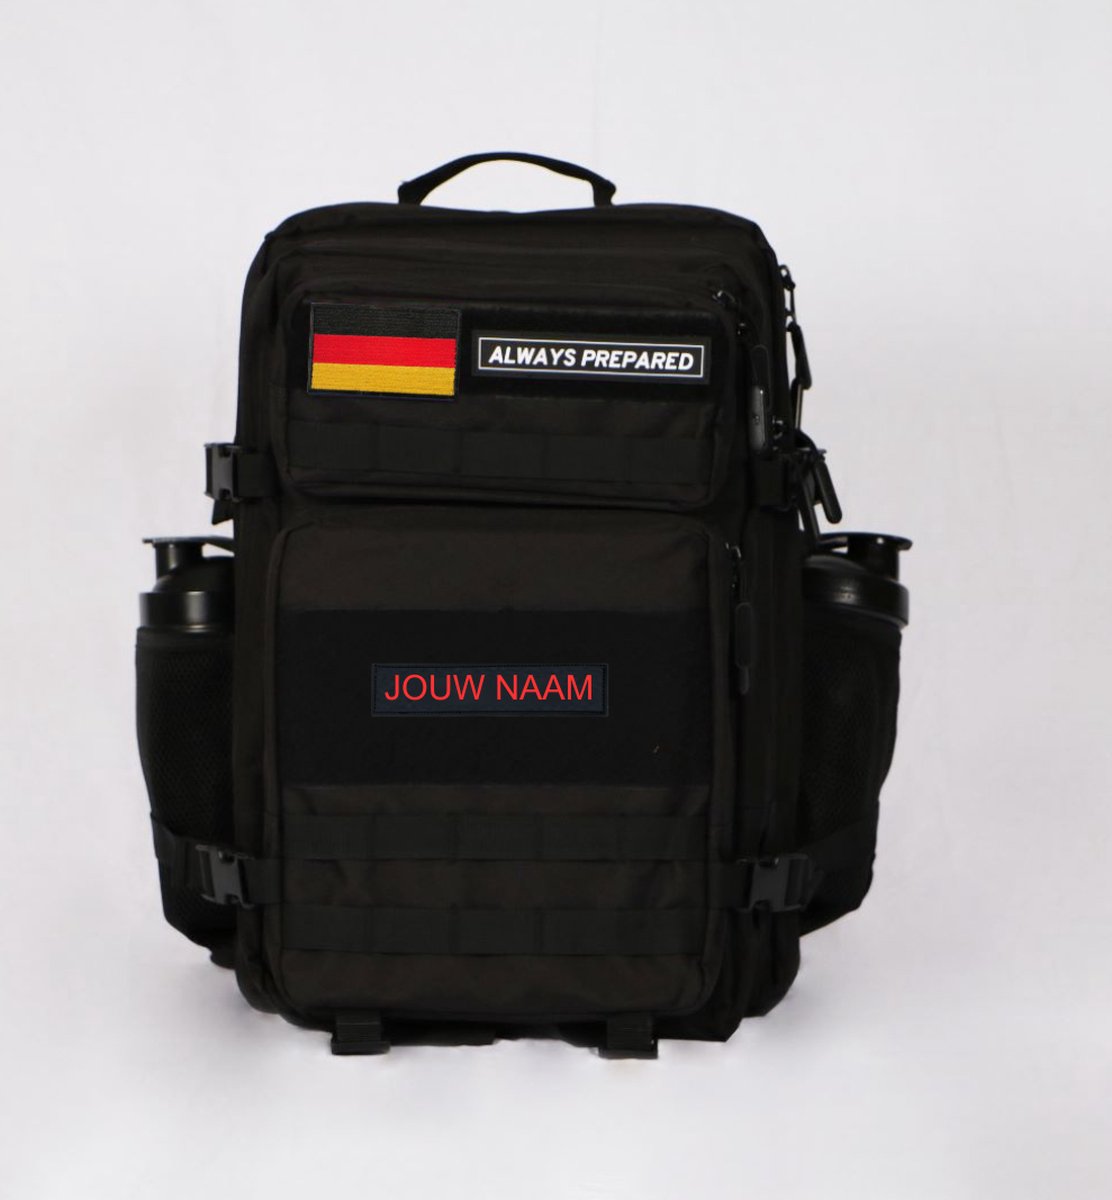 Backpack inclusief eigen naam patch | Waterdicht | Rugzak | Rugtas | Dagrugzak | Wandelen | Hike rugzak | Schooltas | 45 Liter | Zwart